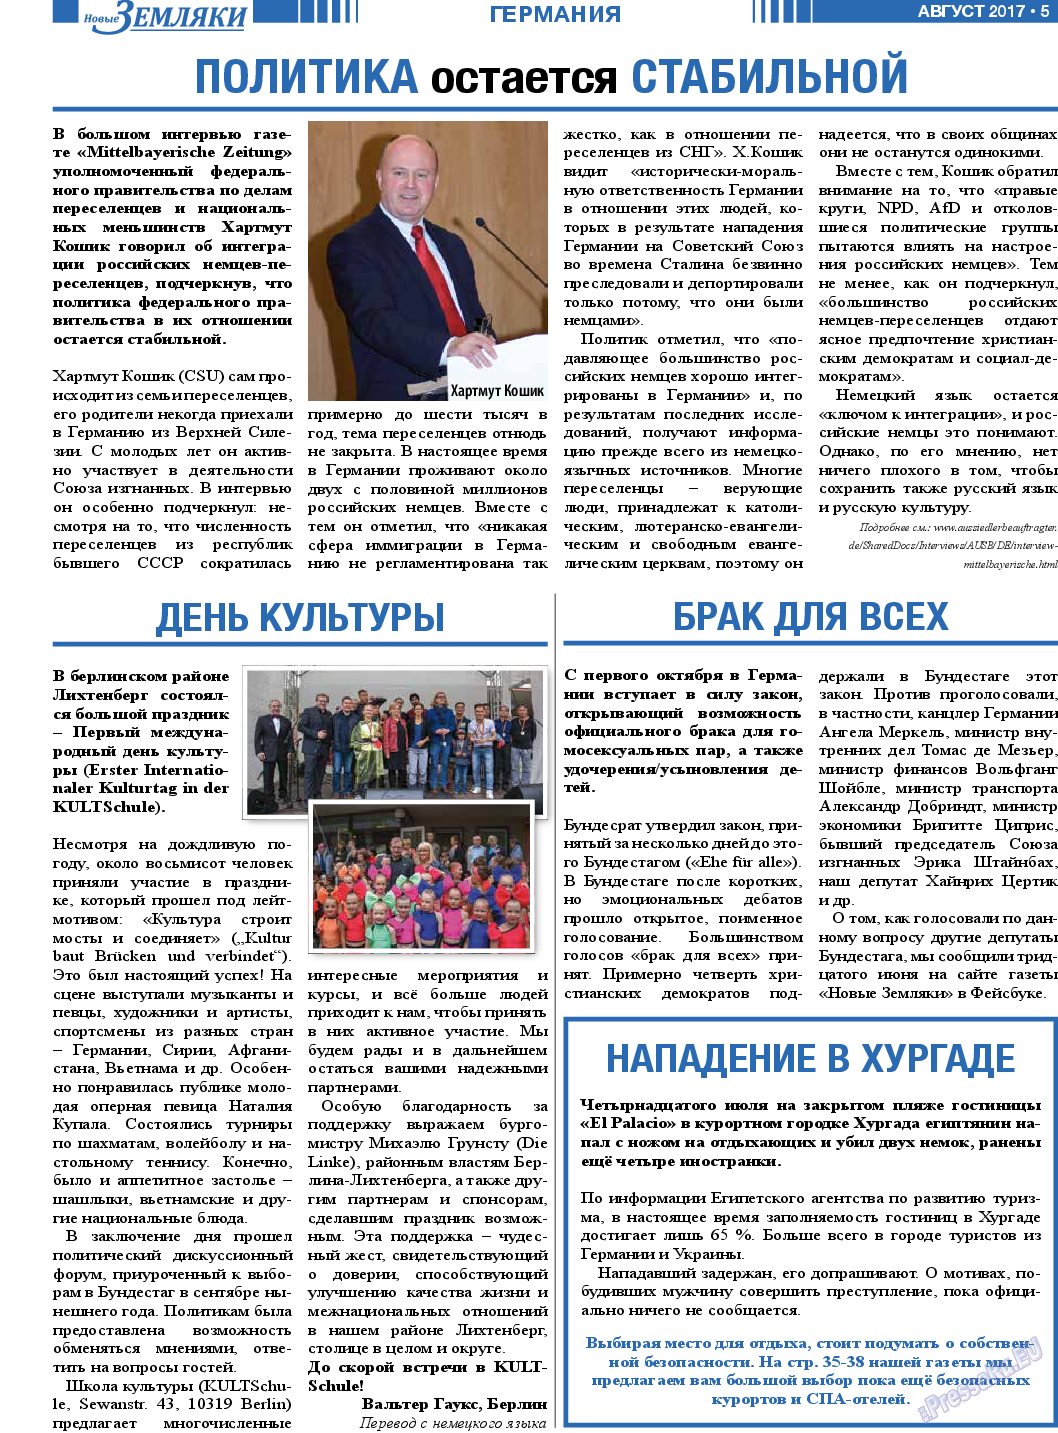 Новые Земляки, газета. 2017 №8 стр.5